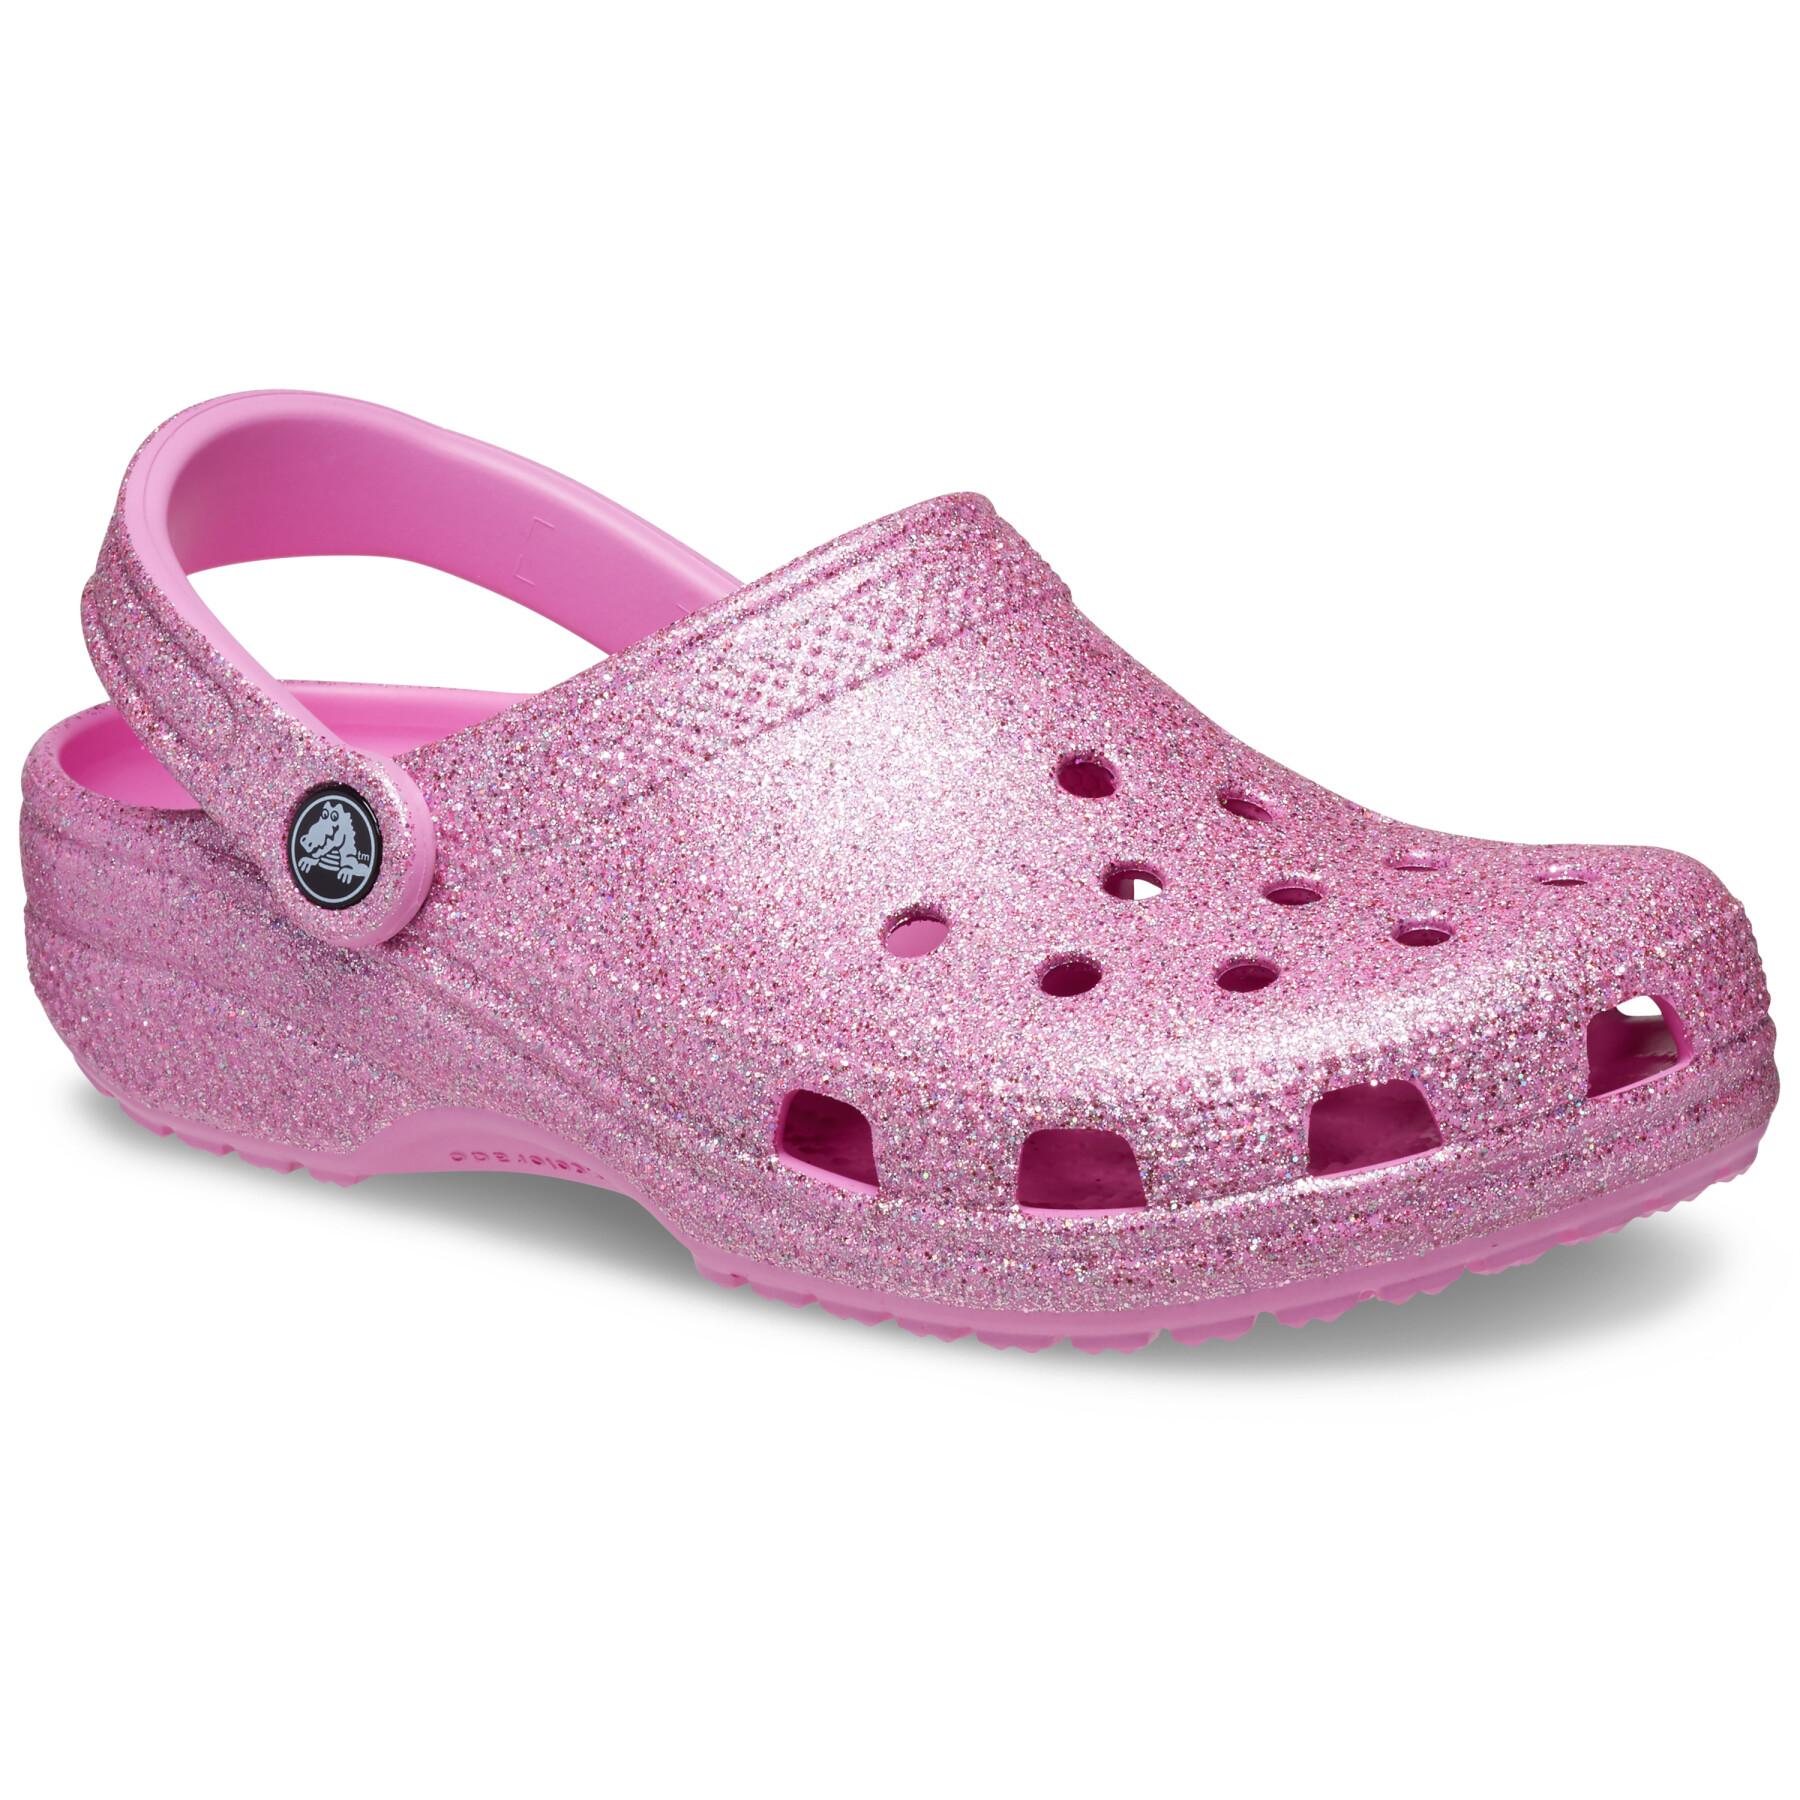 Women's clogs Crocs Classic Glitter II